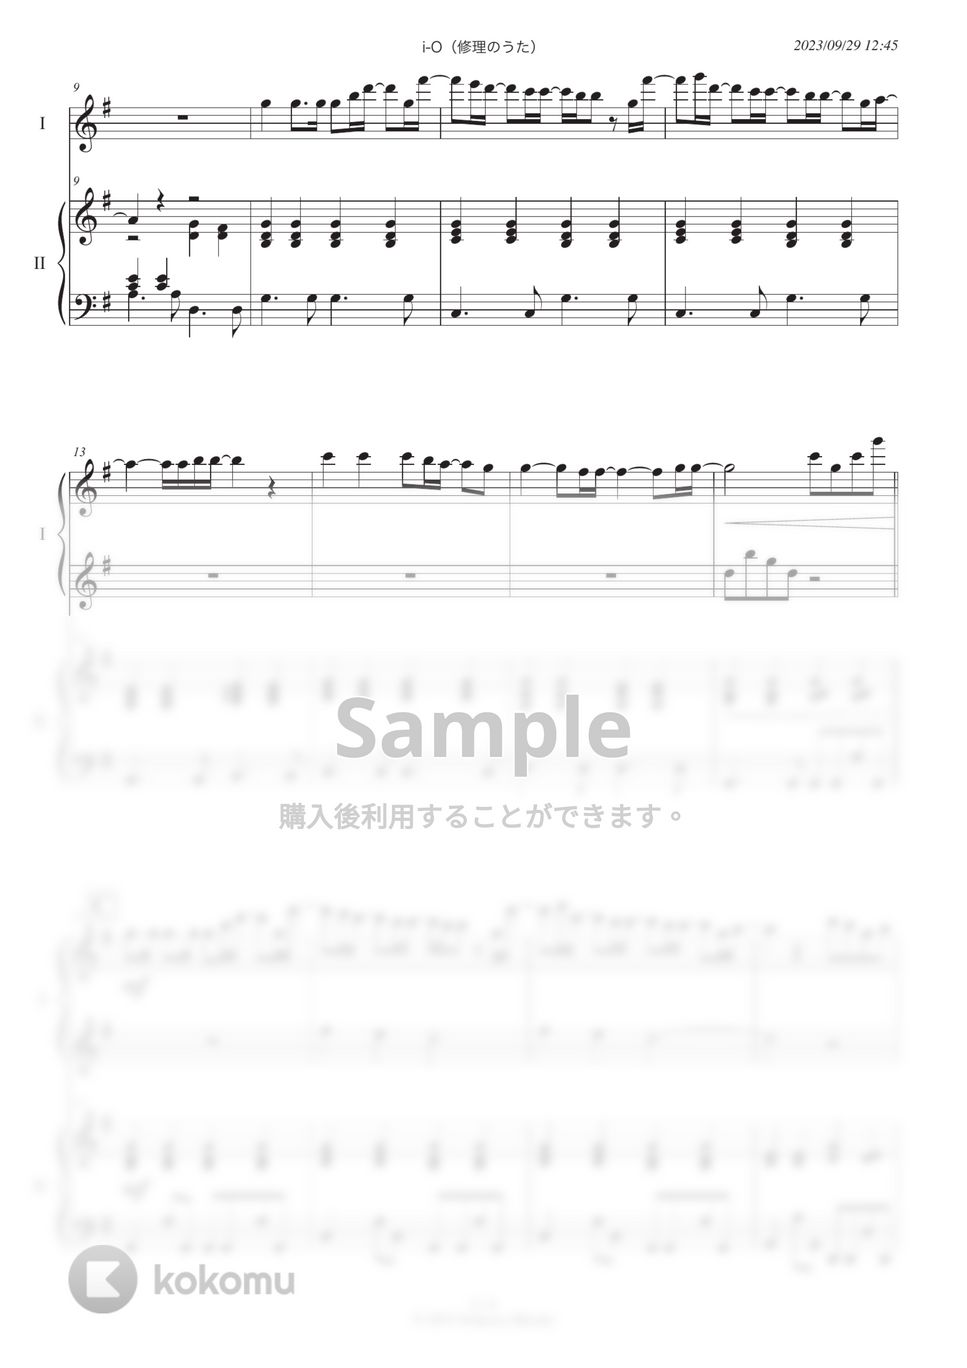 スピッツ - i-O(修理のうた) (ピアノ連弾) by 糸川瑞樹